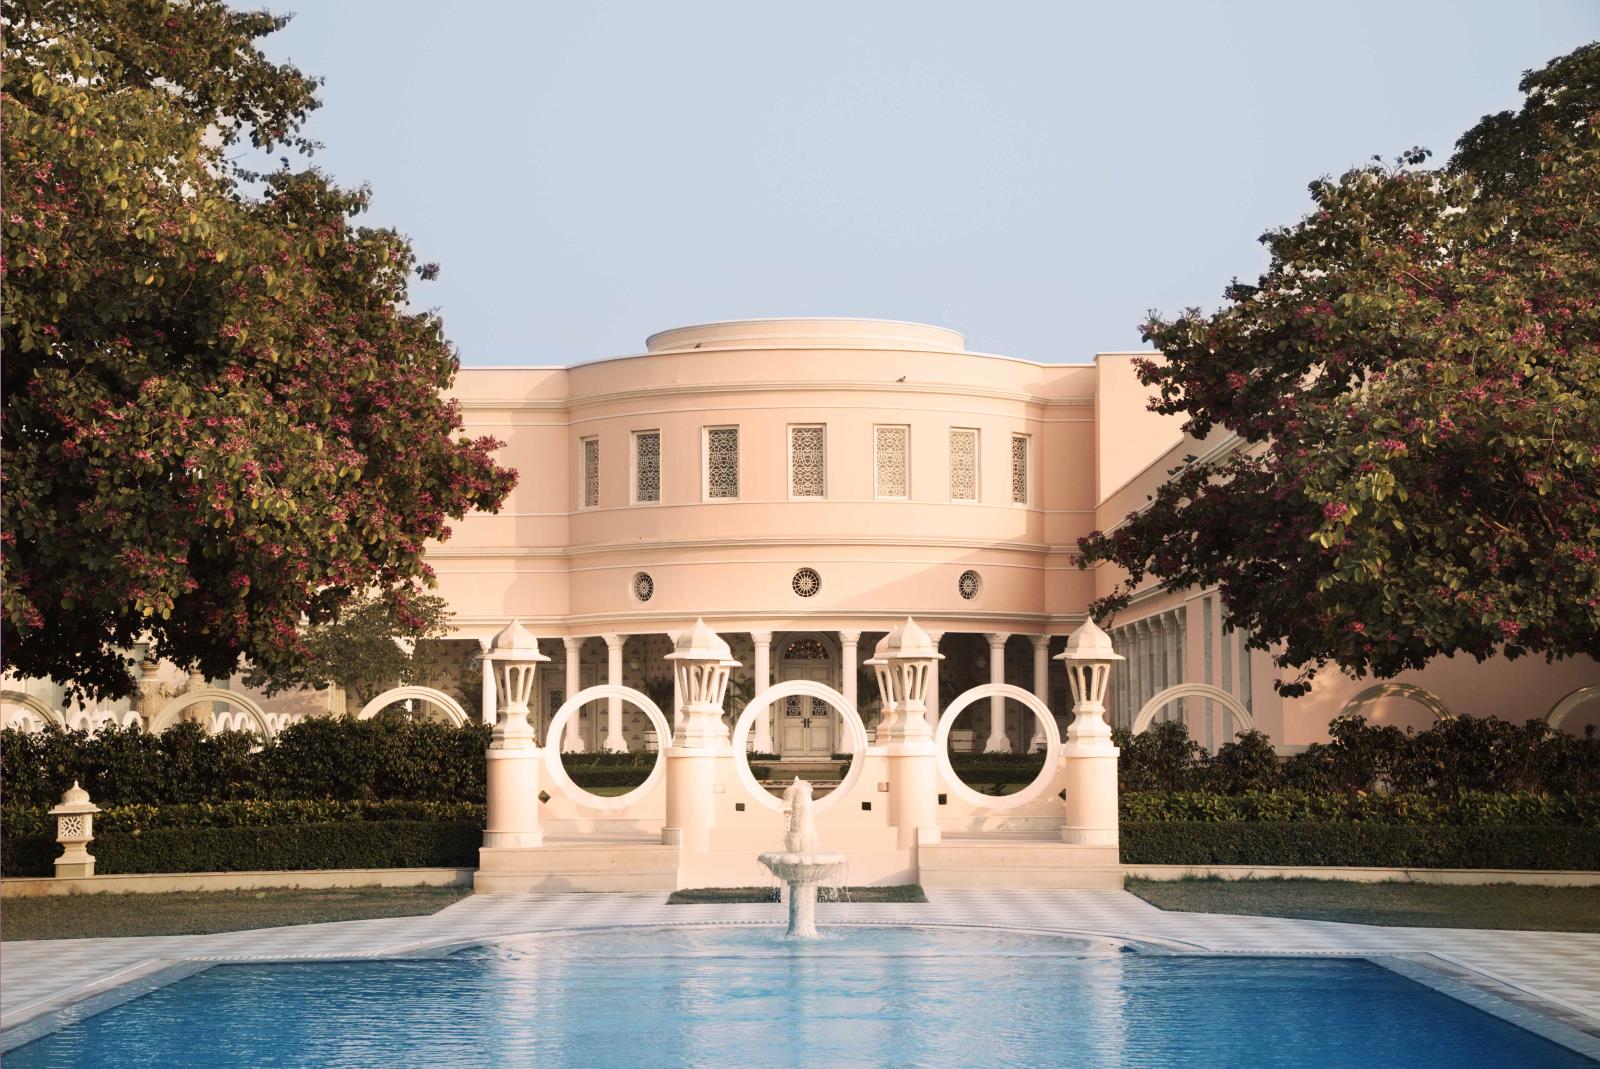 Pool - Rajmahal Palace  